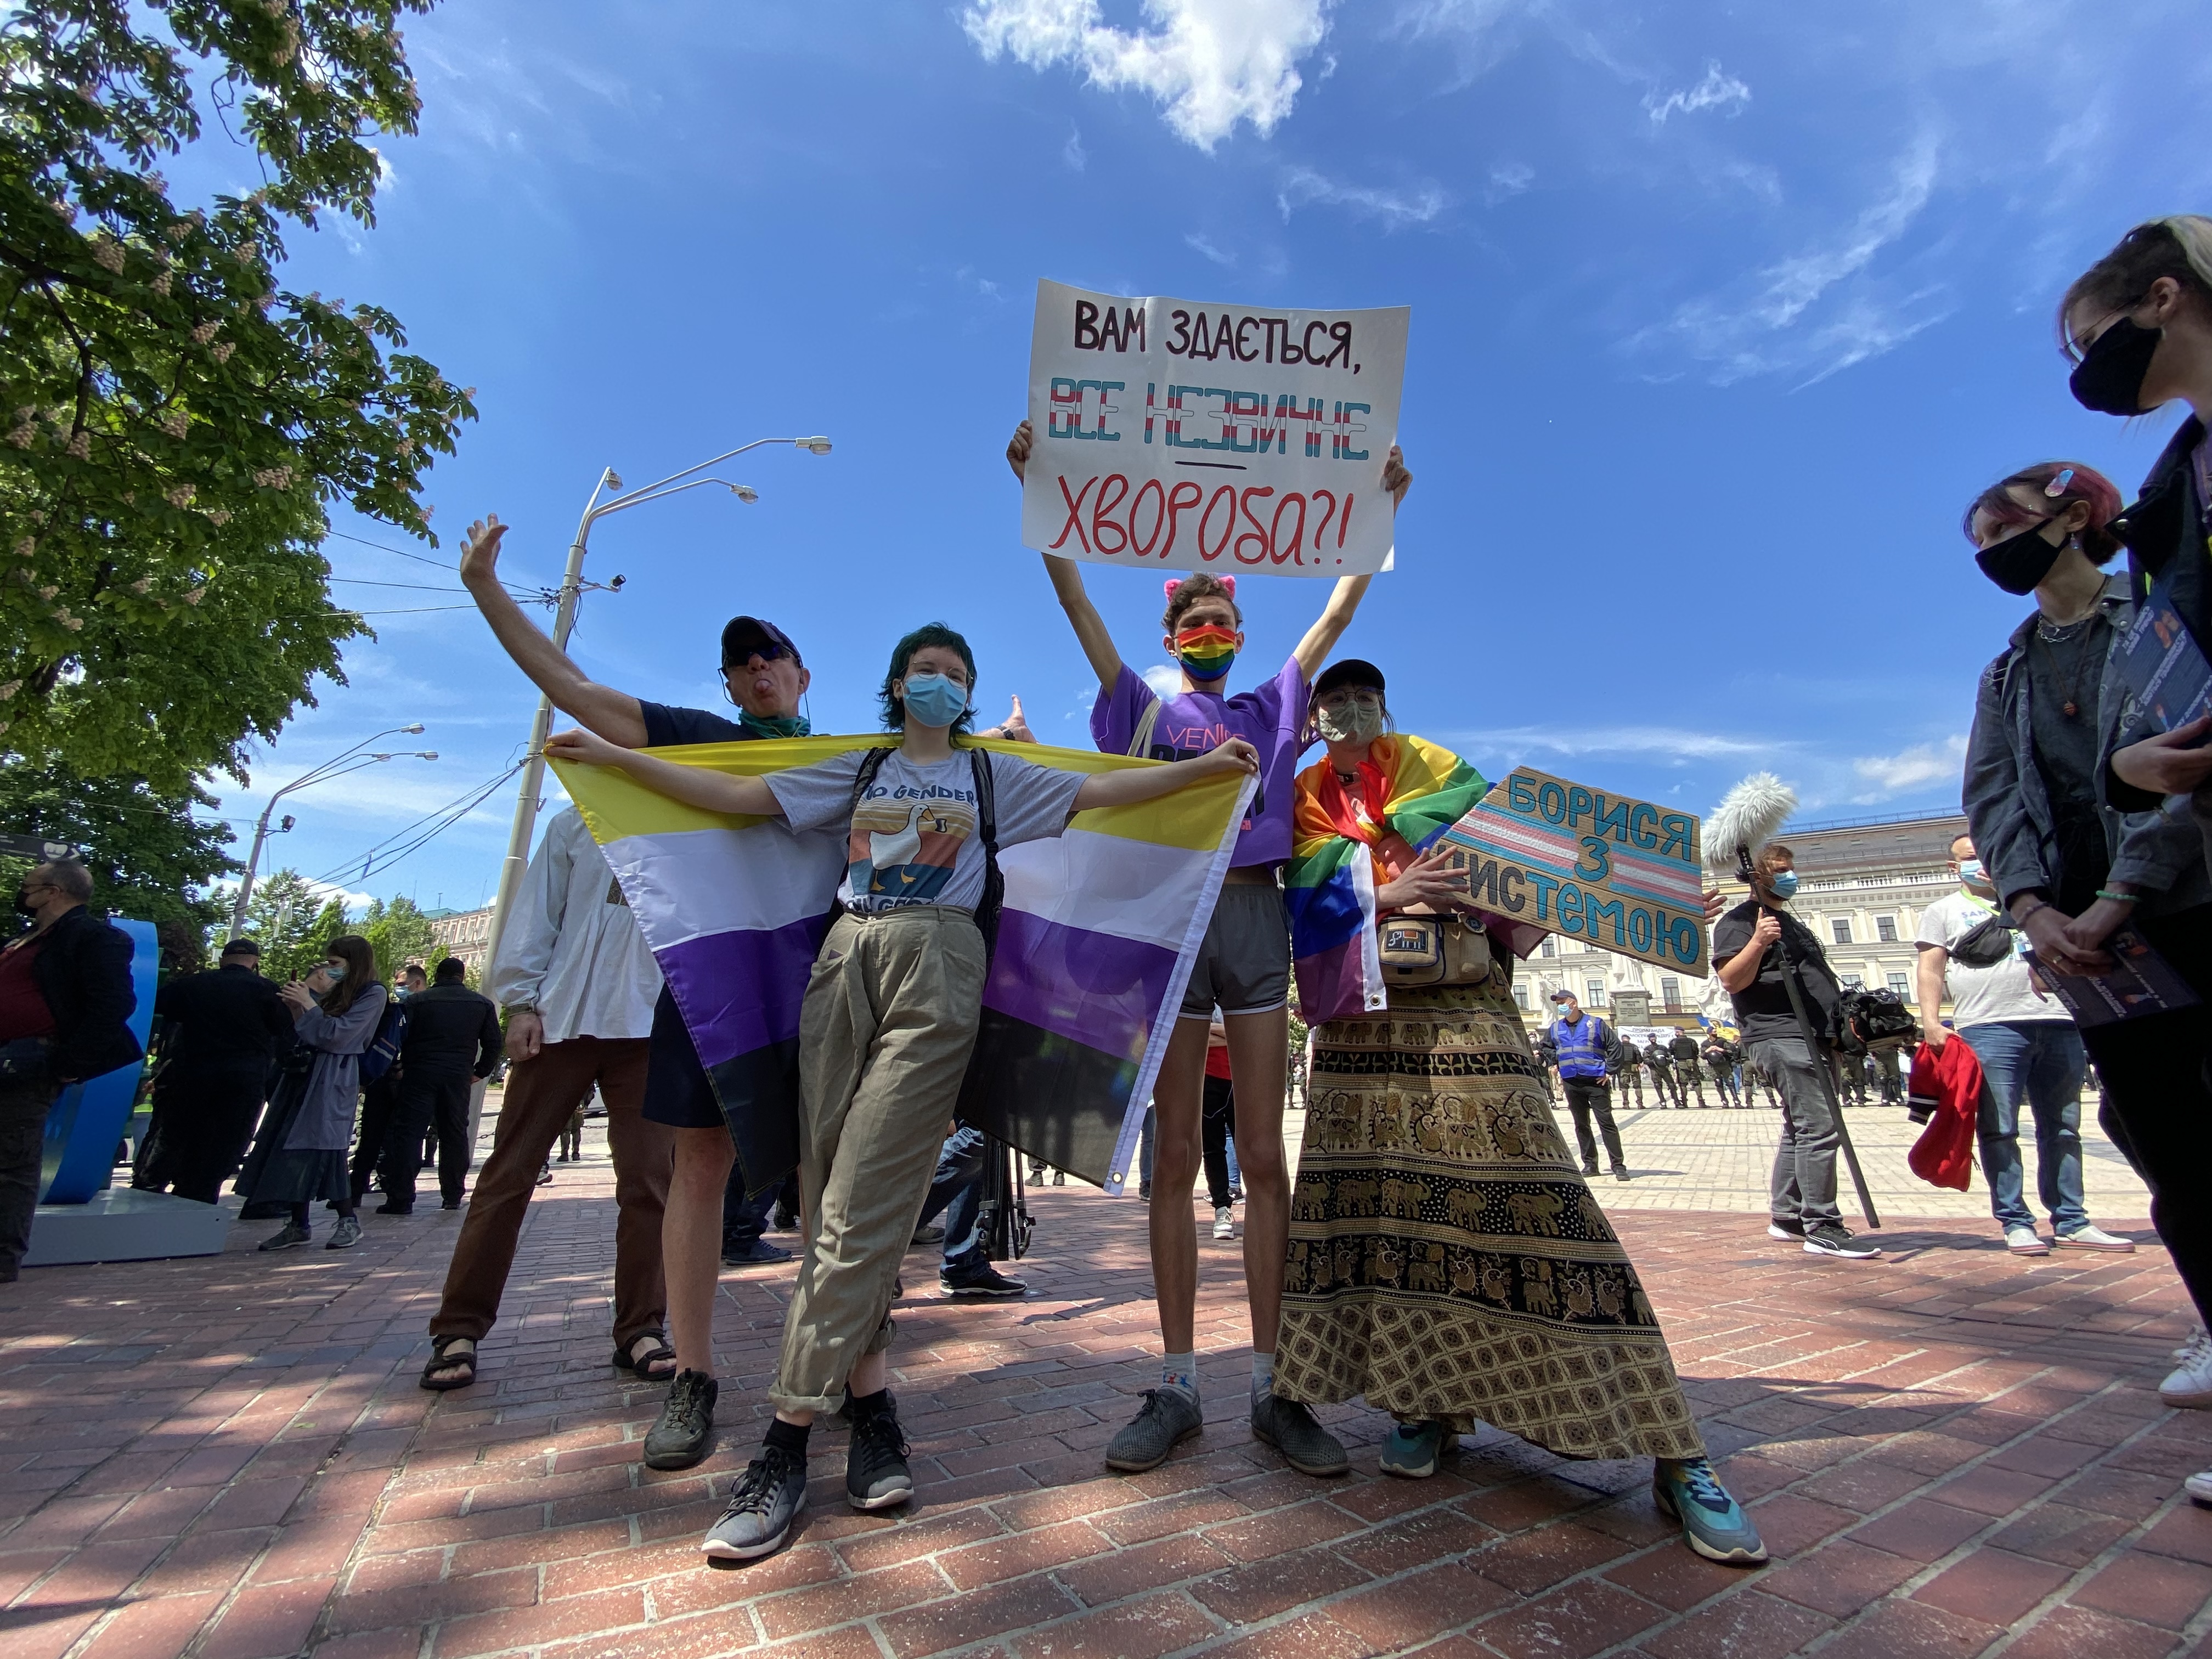 «Ні трансфобії!»: у Києві проходить Транс*марш (ФОТО)